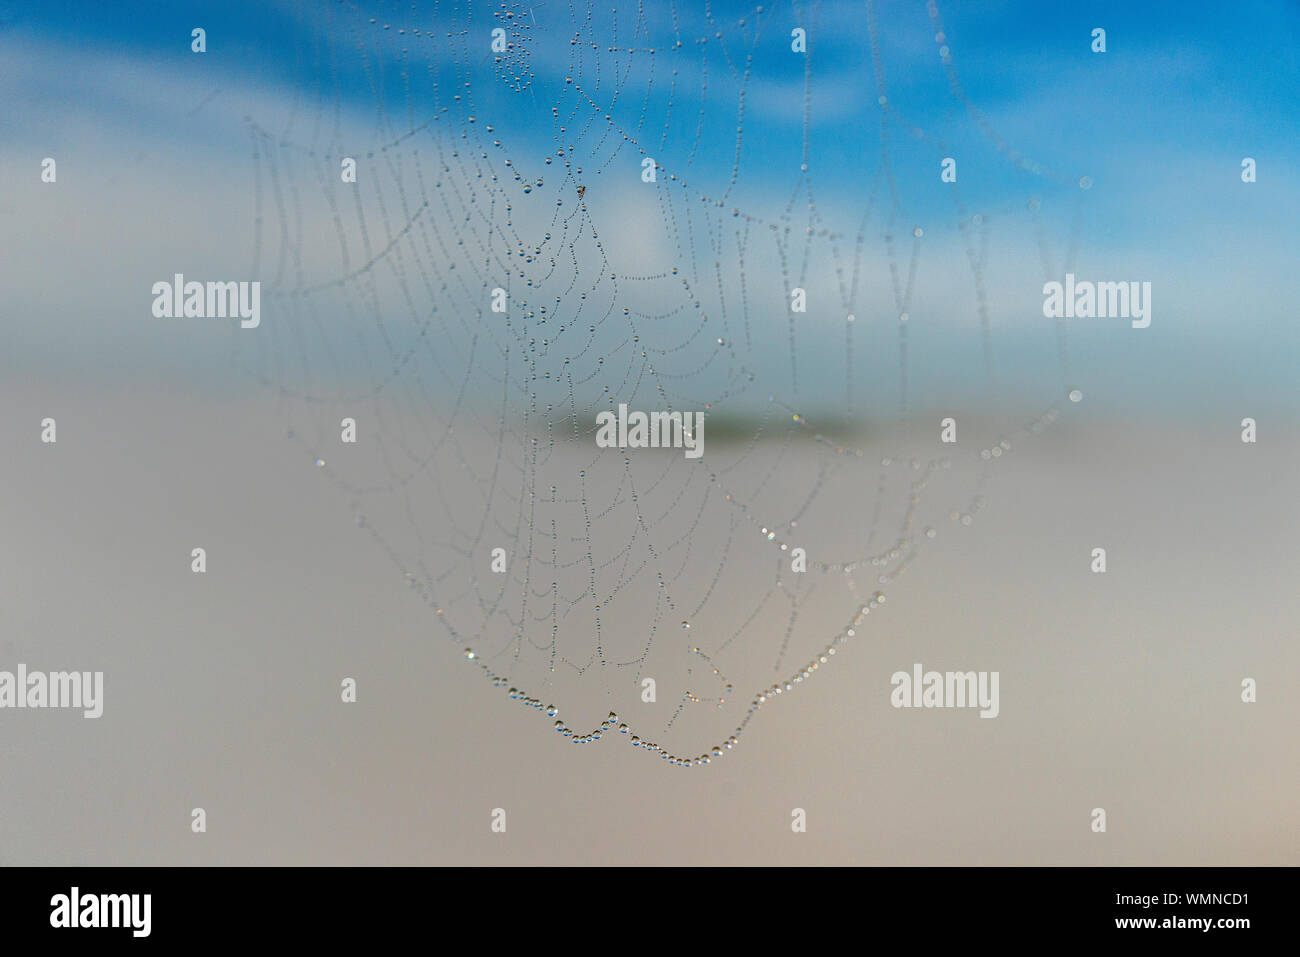 Un cierre sobre el rocío de la mañana sobre telas de araña, con un valle cubierto de neblina detrás de él. Foto de stock